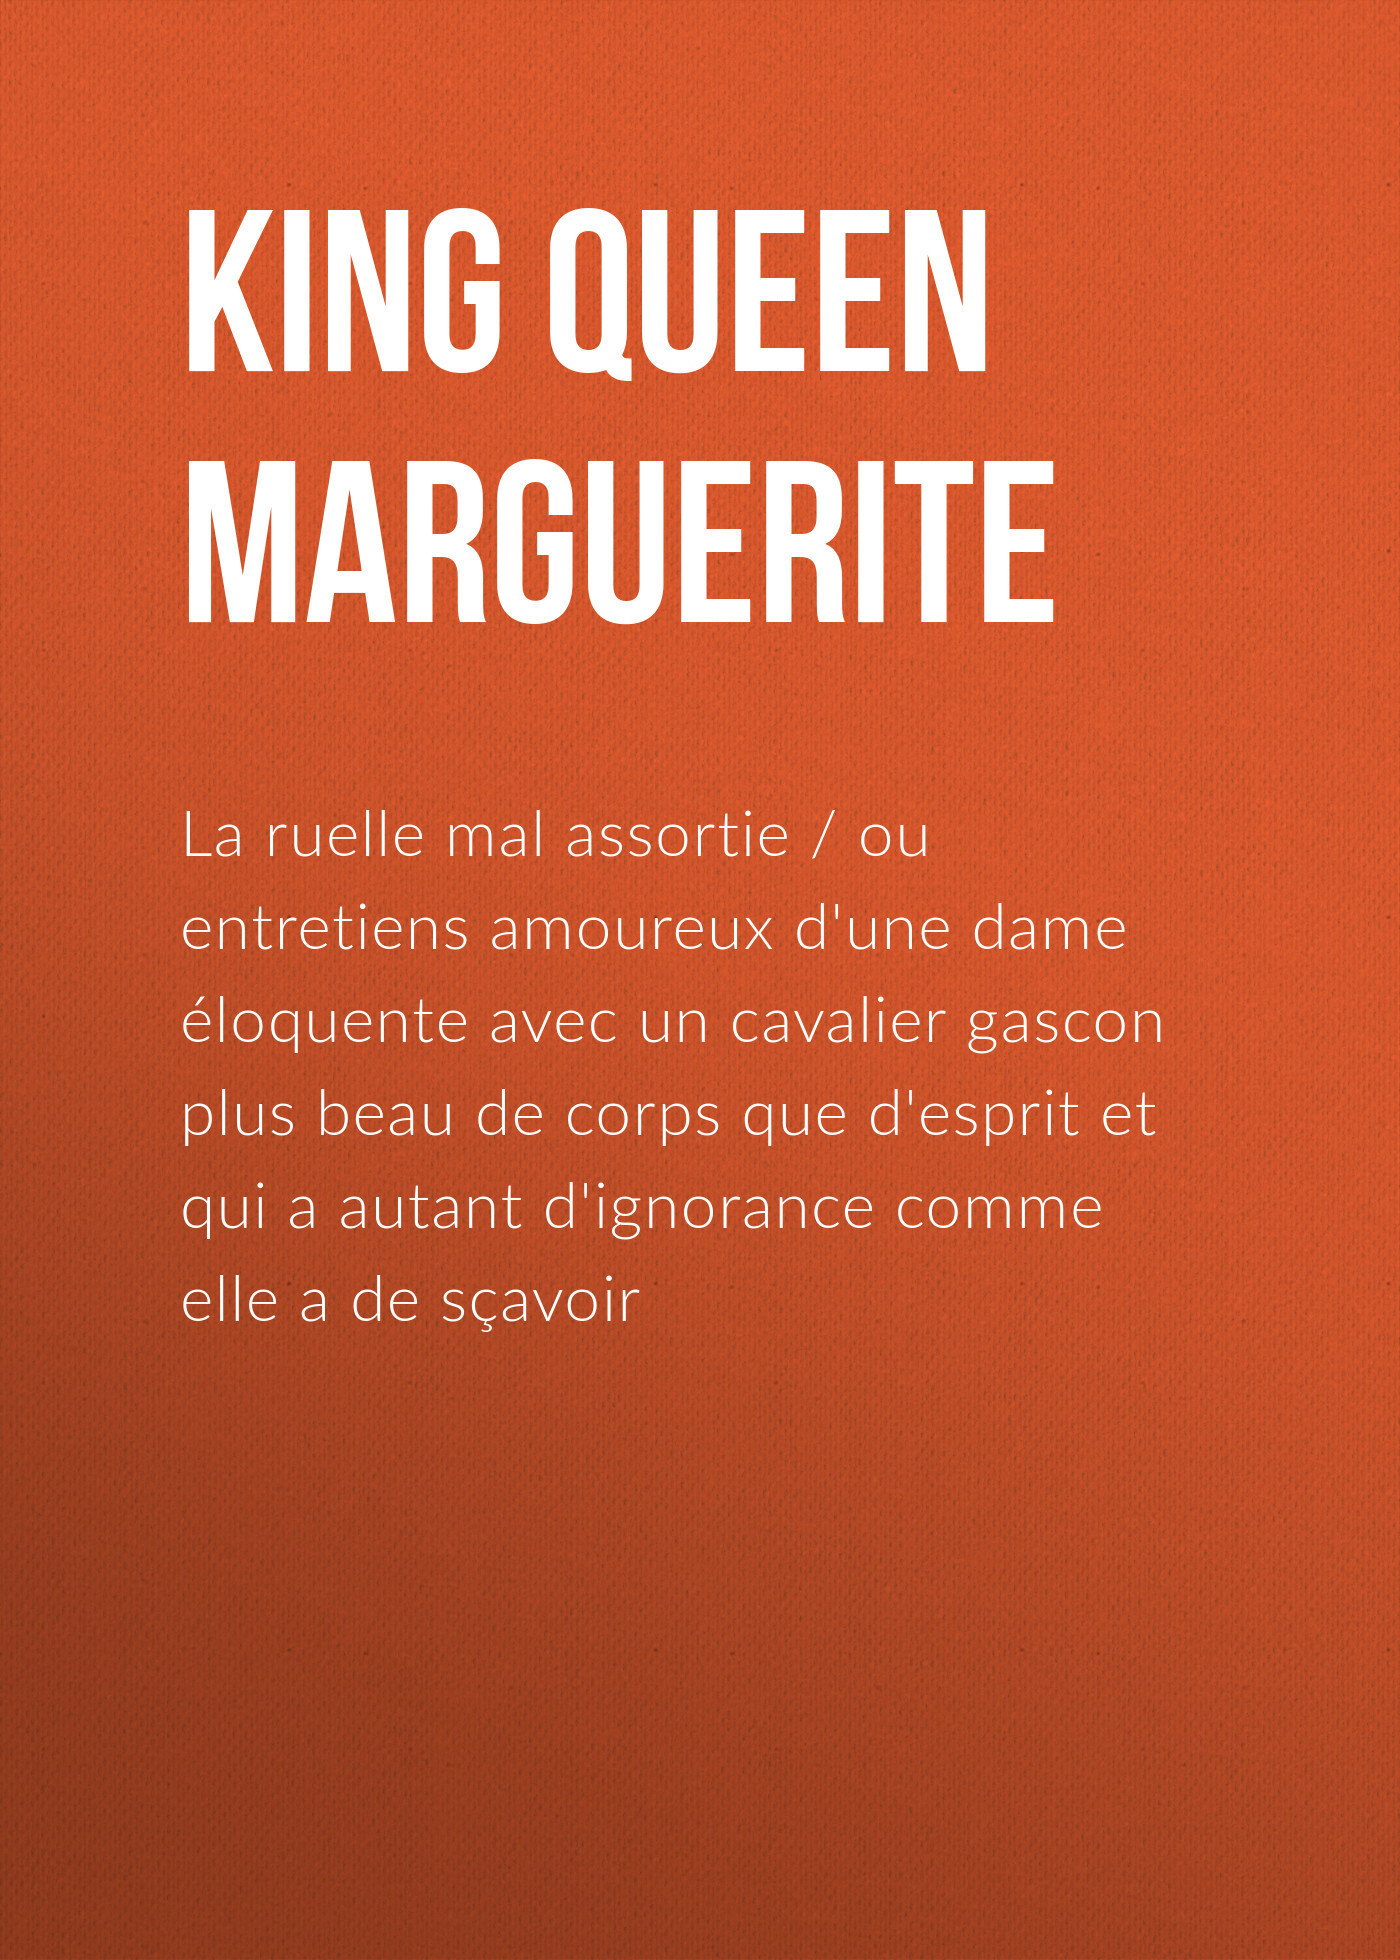 Книга La ruelle mal assortie из серии , созданная Queen Marguerite , может относится к жанру Зарубежная классика, Зарубежная старинная литература. Стоимость электронной книги La ruelle mal assortie с идентификатором 25293579 составляет 0 руб.